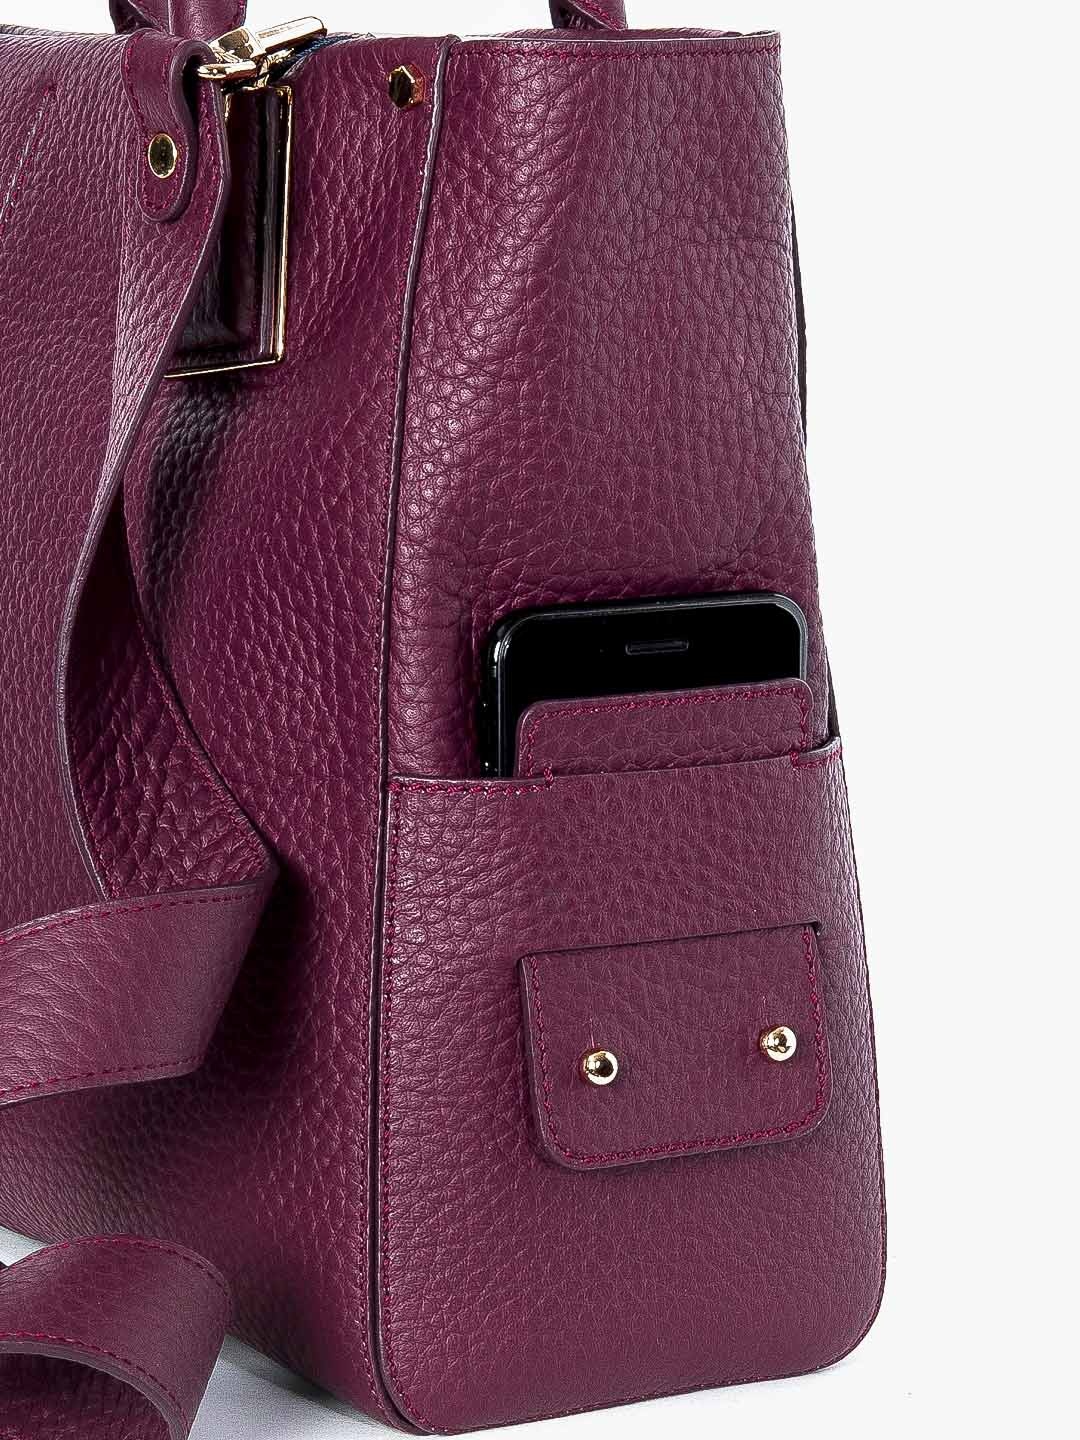 Фото Женская деловая cумка-тоут из плотной, но мягкой кожи премиального качества Деловые сумки